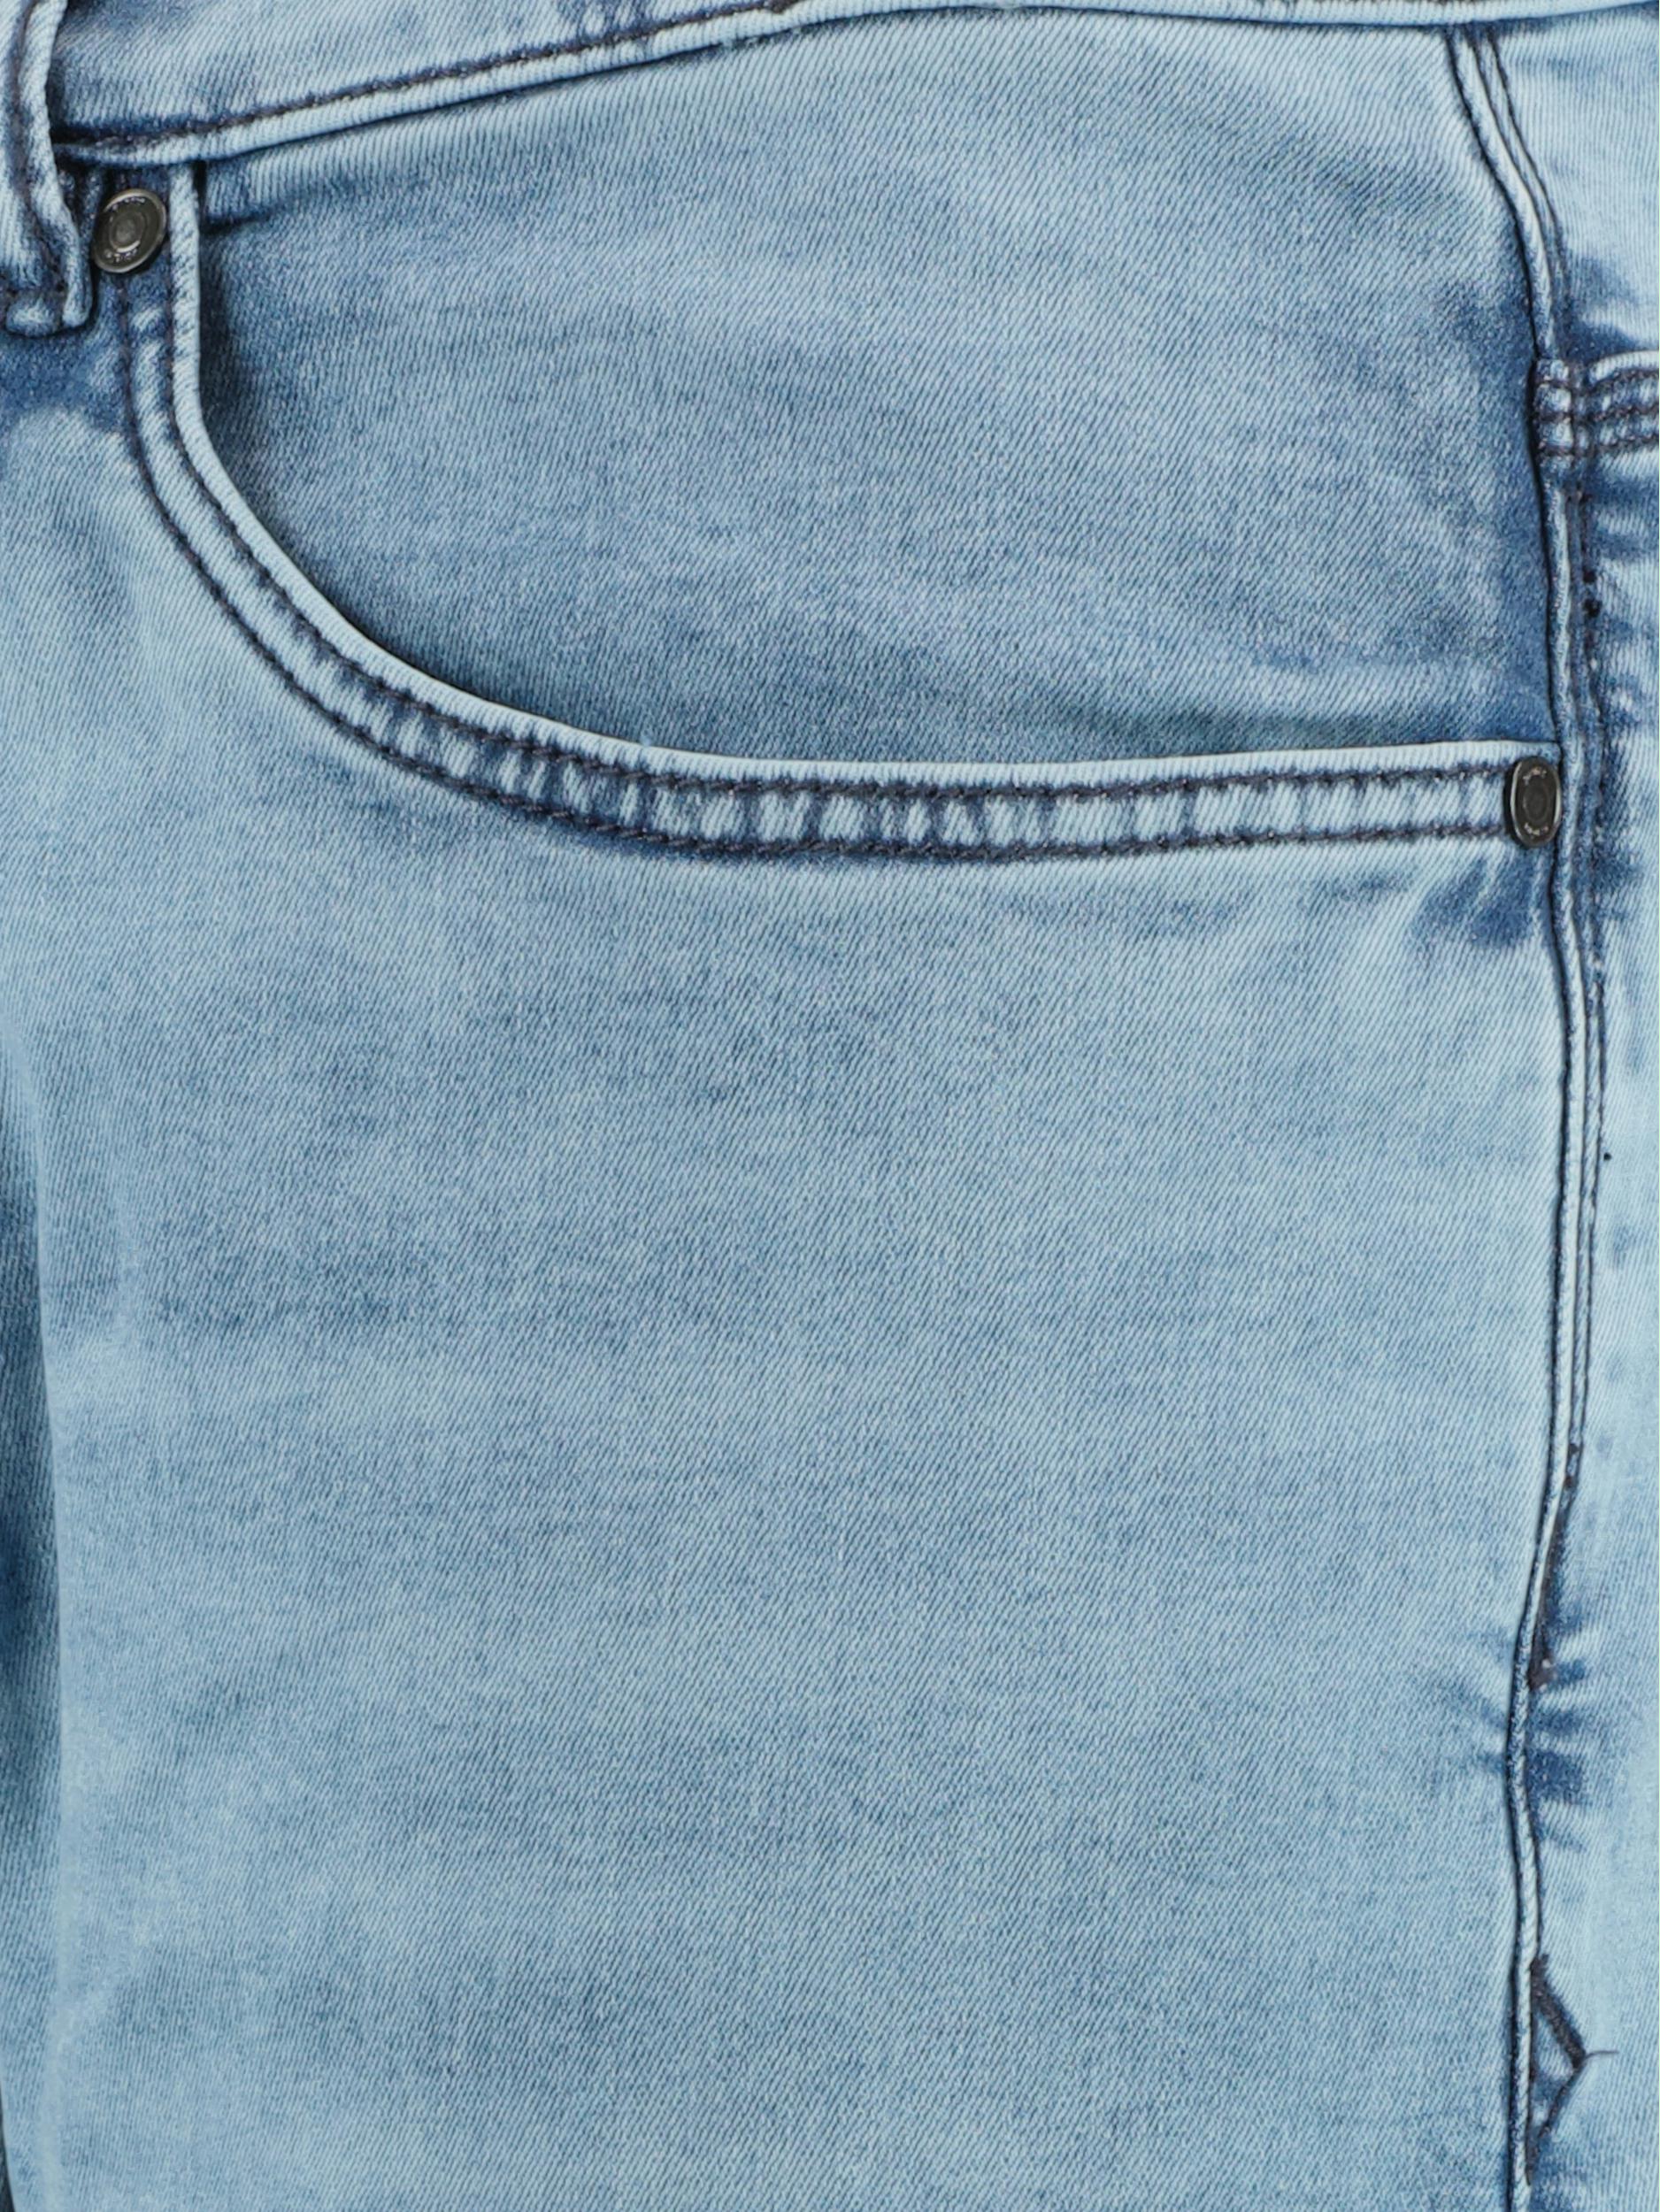 Pierre Cardin 5-Pocket Jeans Blauw  C7 35530.8070/6847